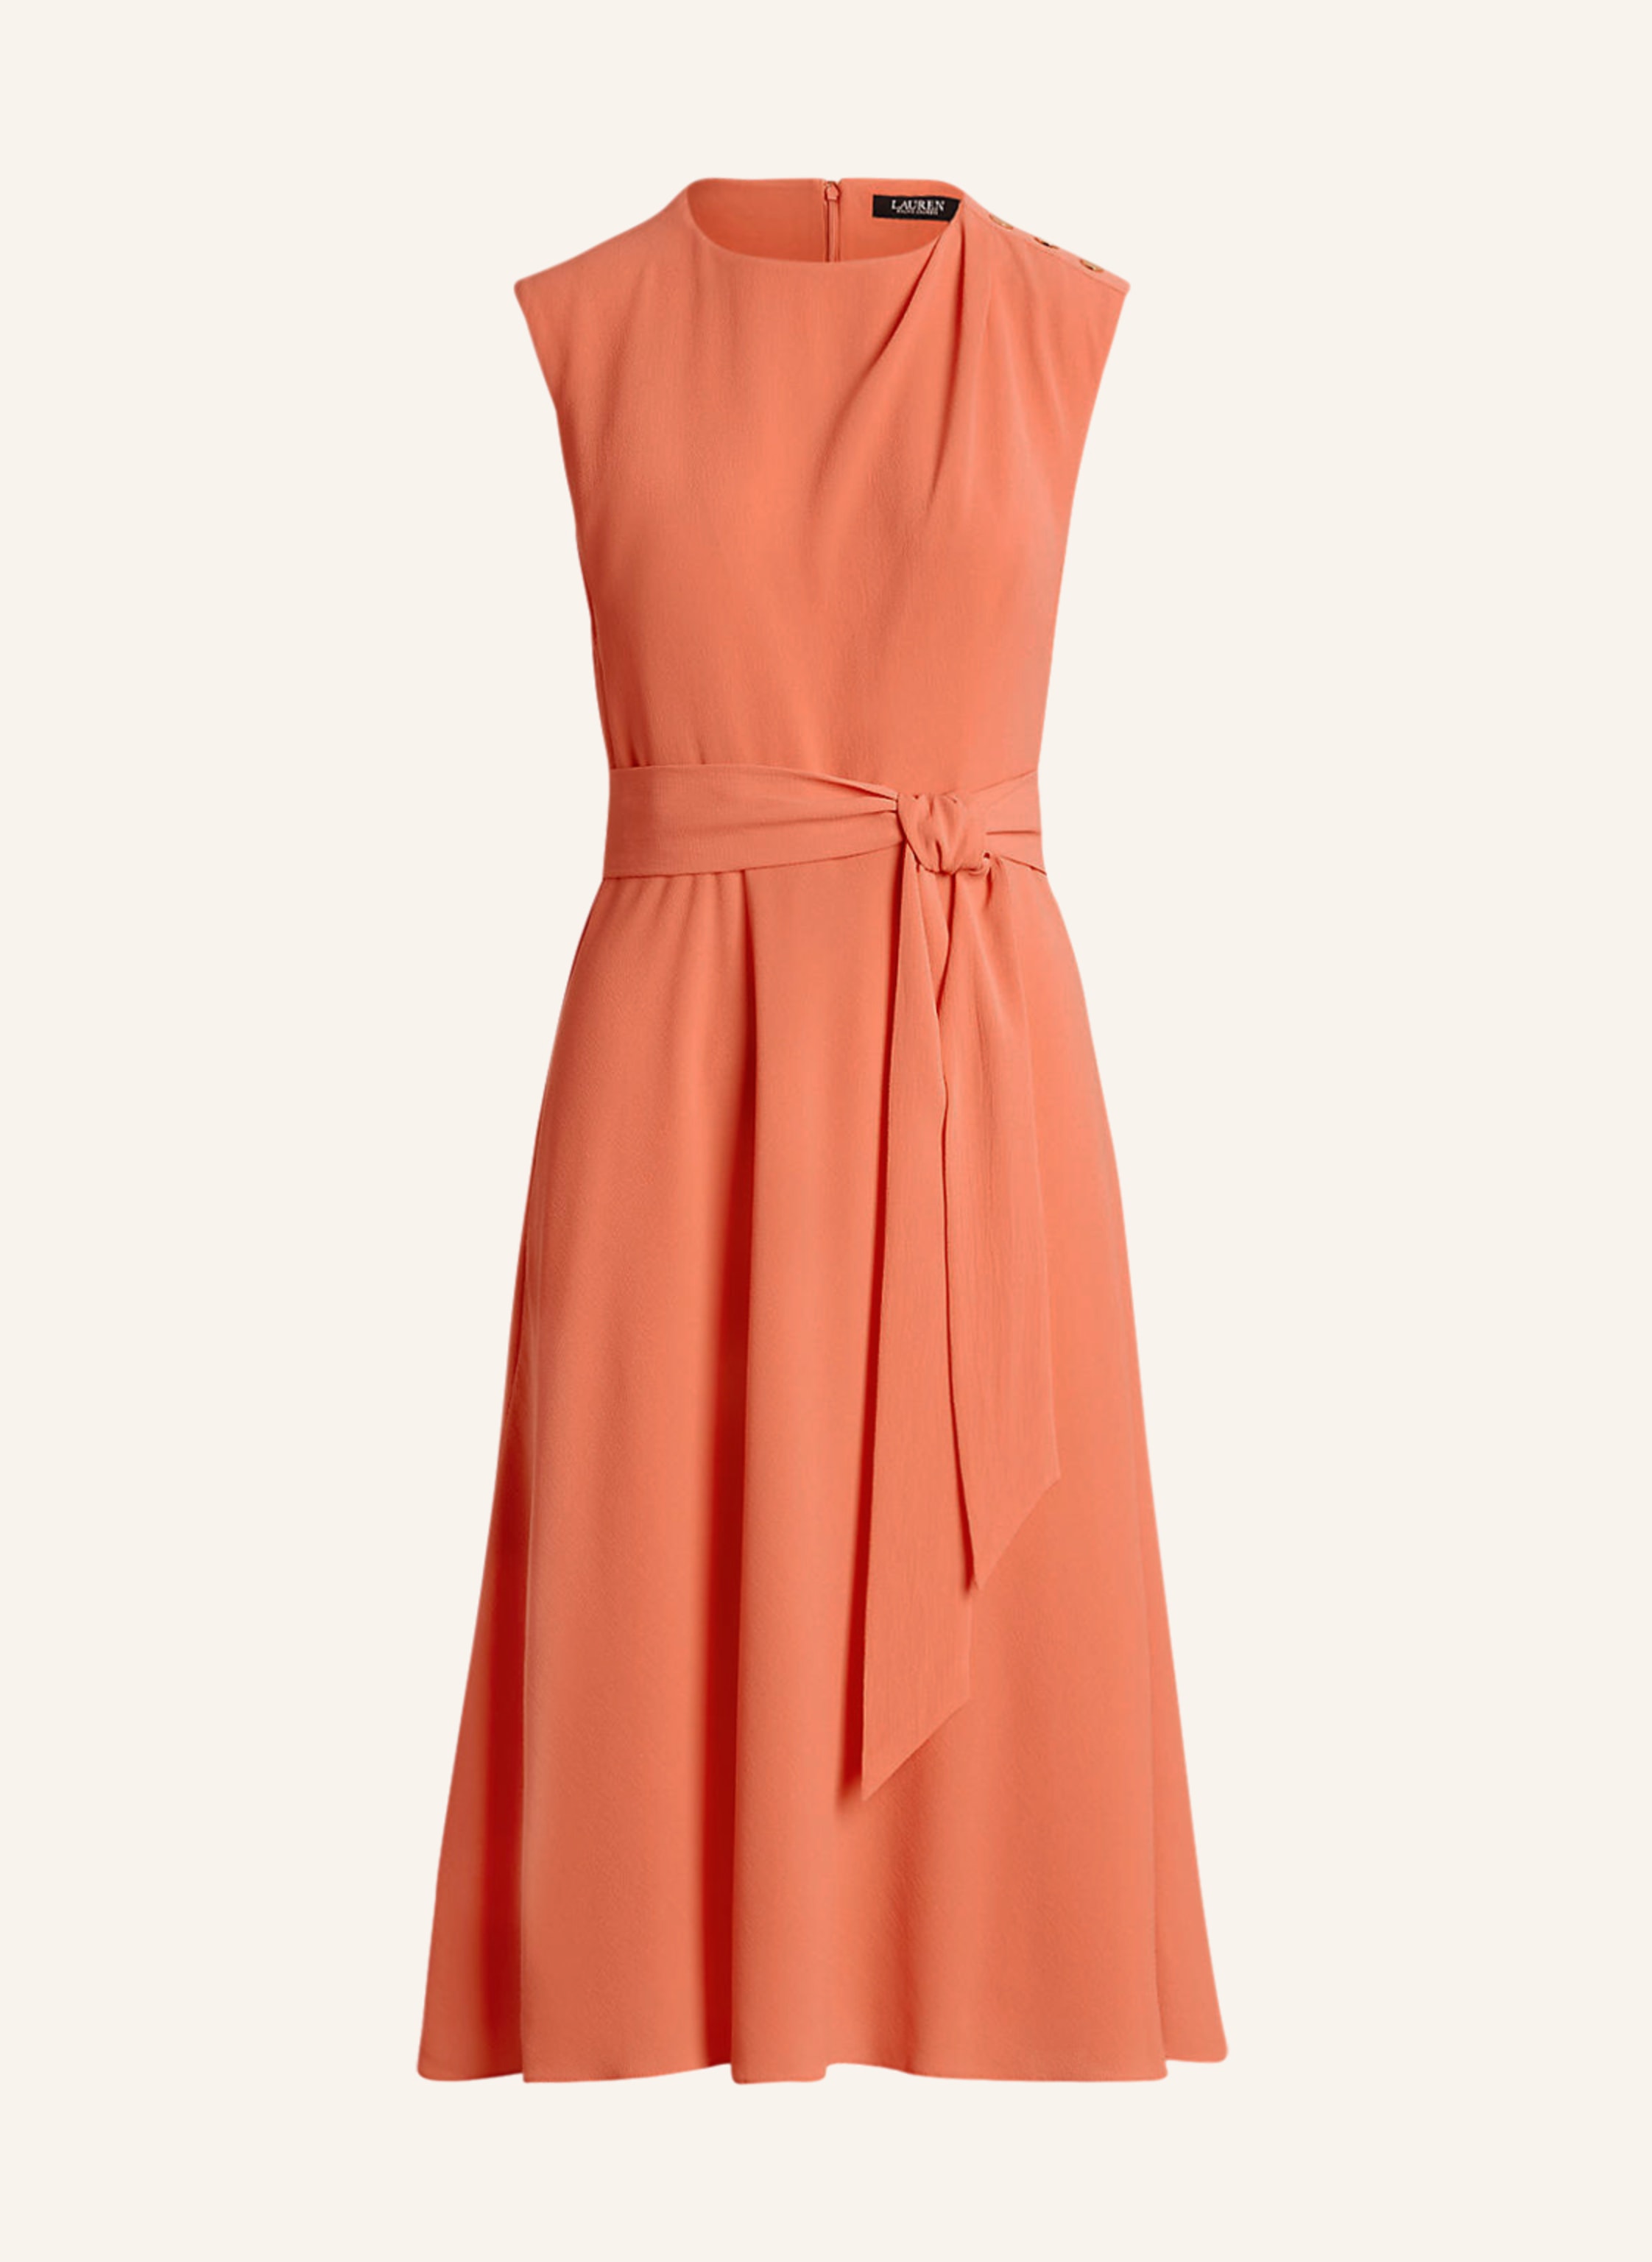 LAUREN RALPH LAUREN Dress in orange | Breuninger